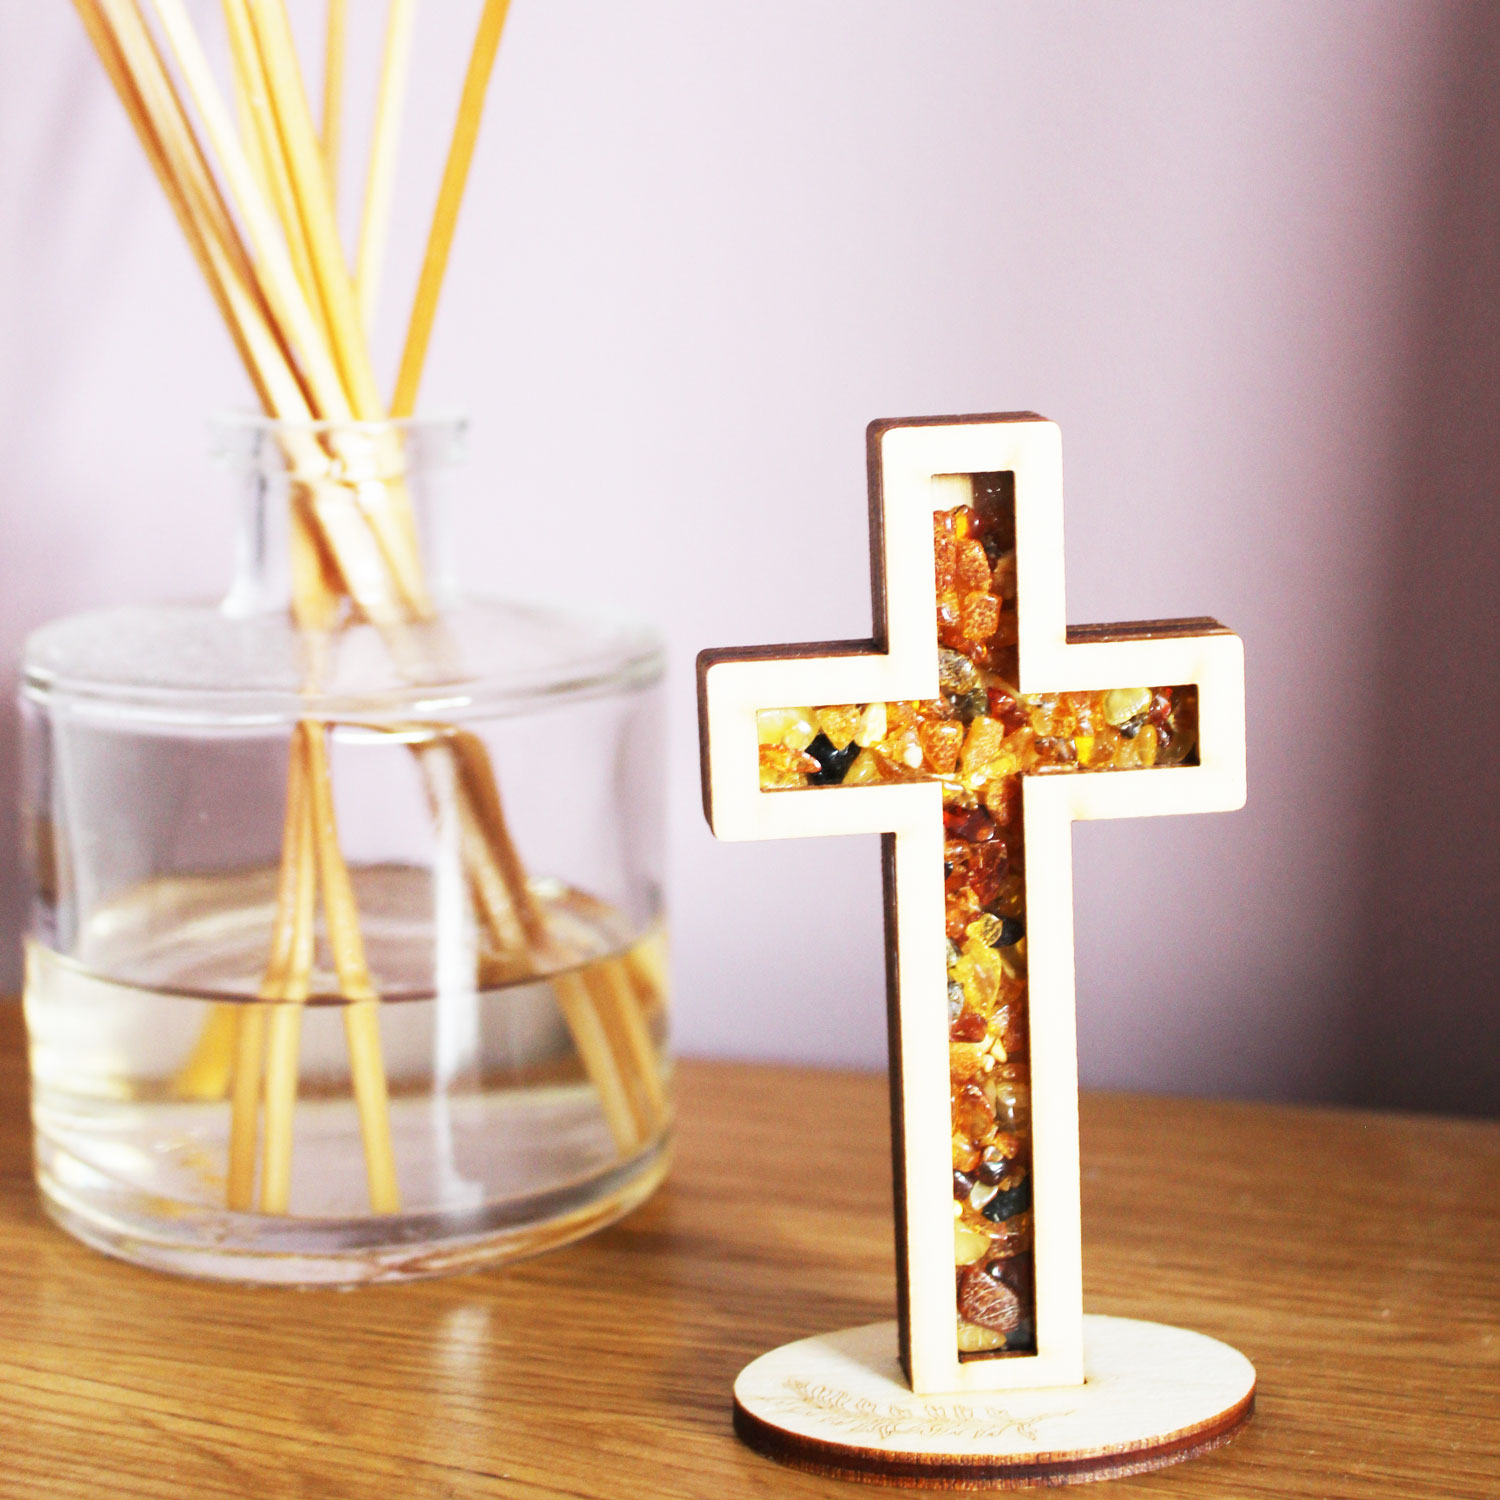 Amber Cross Ornament